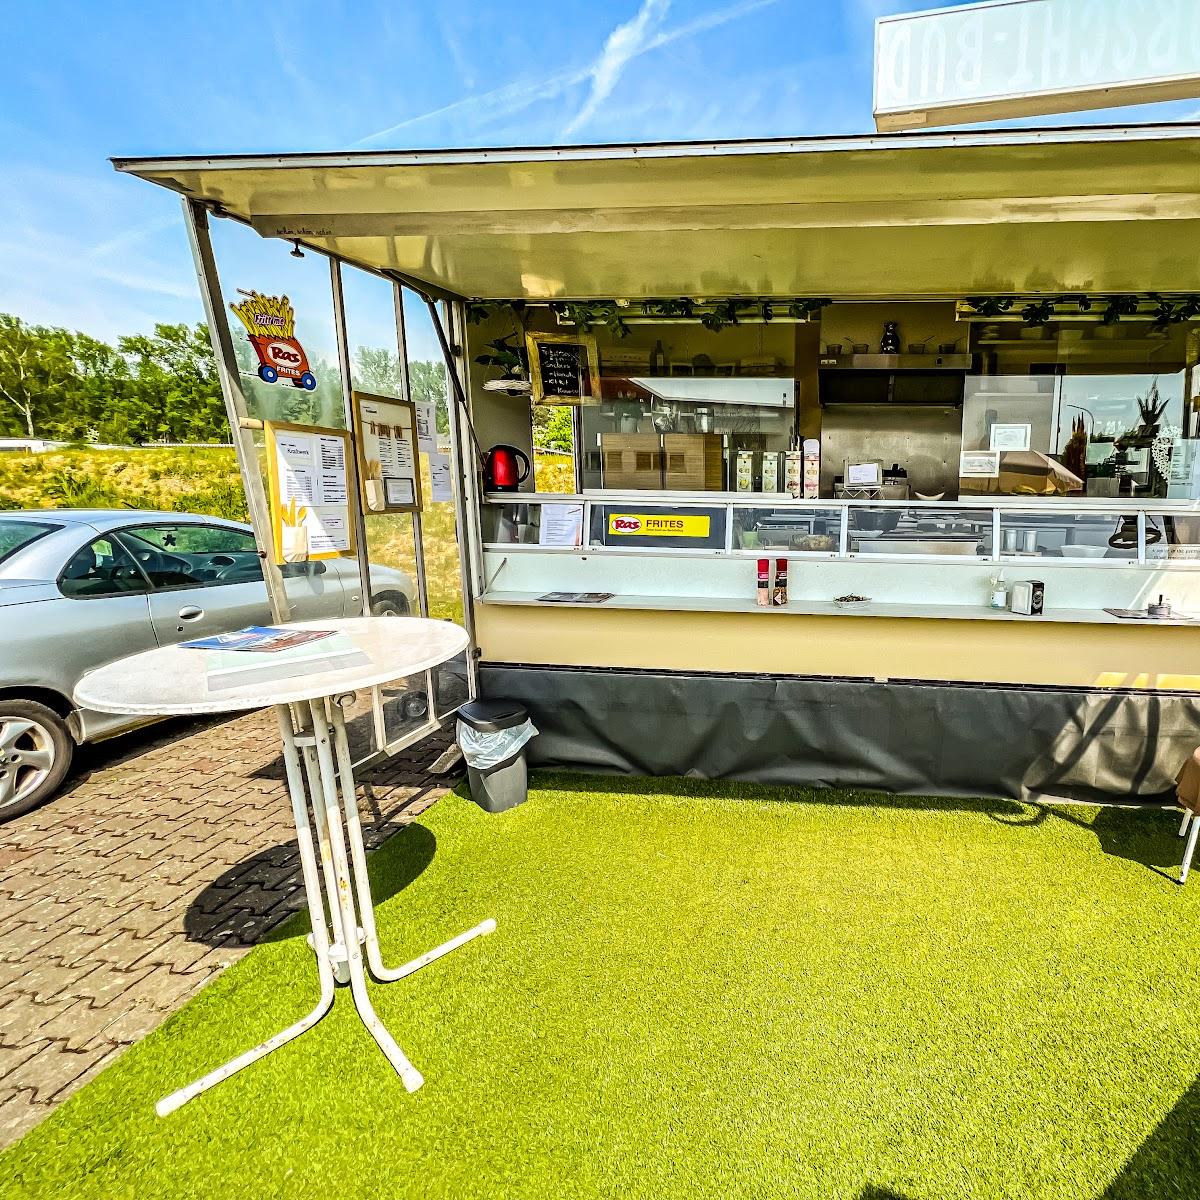 Restaurant "Imbisswagen" in Buseck